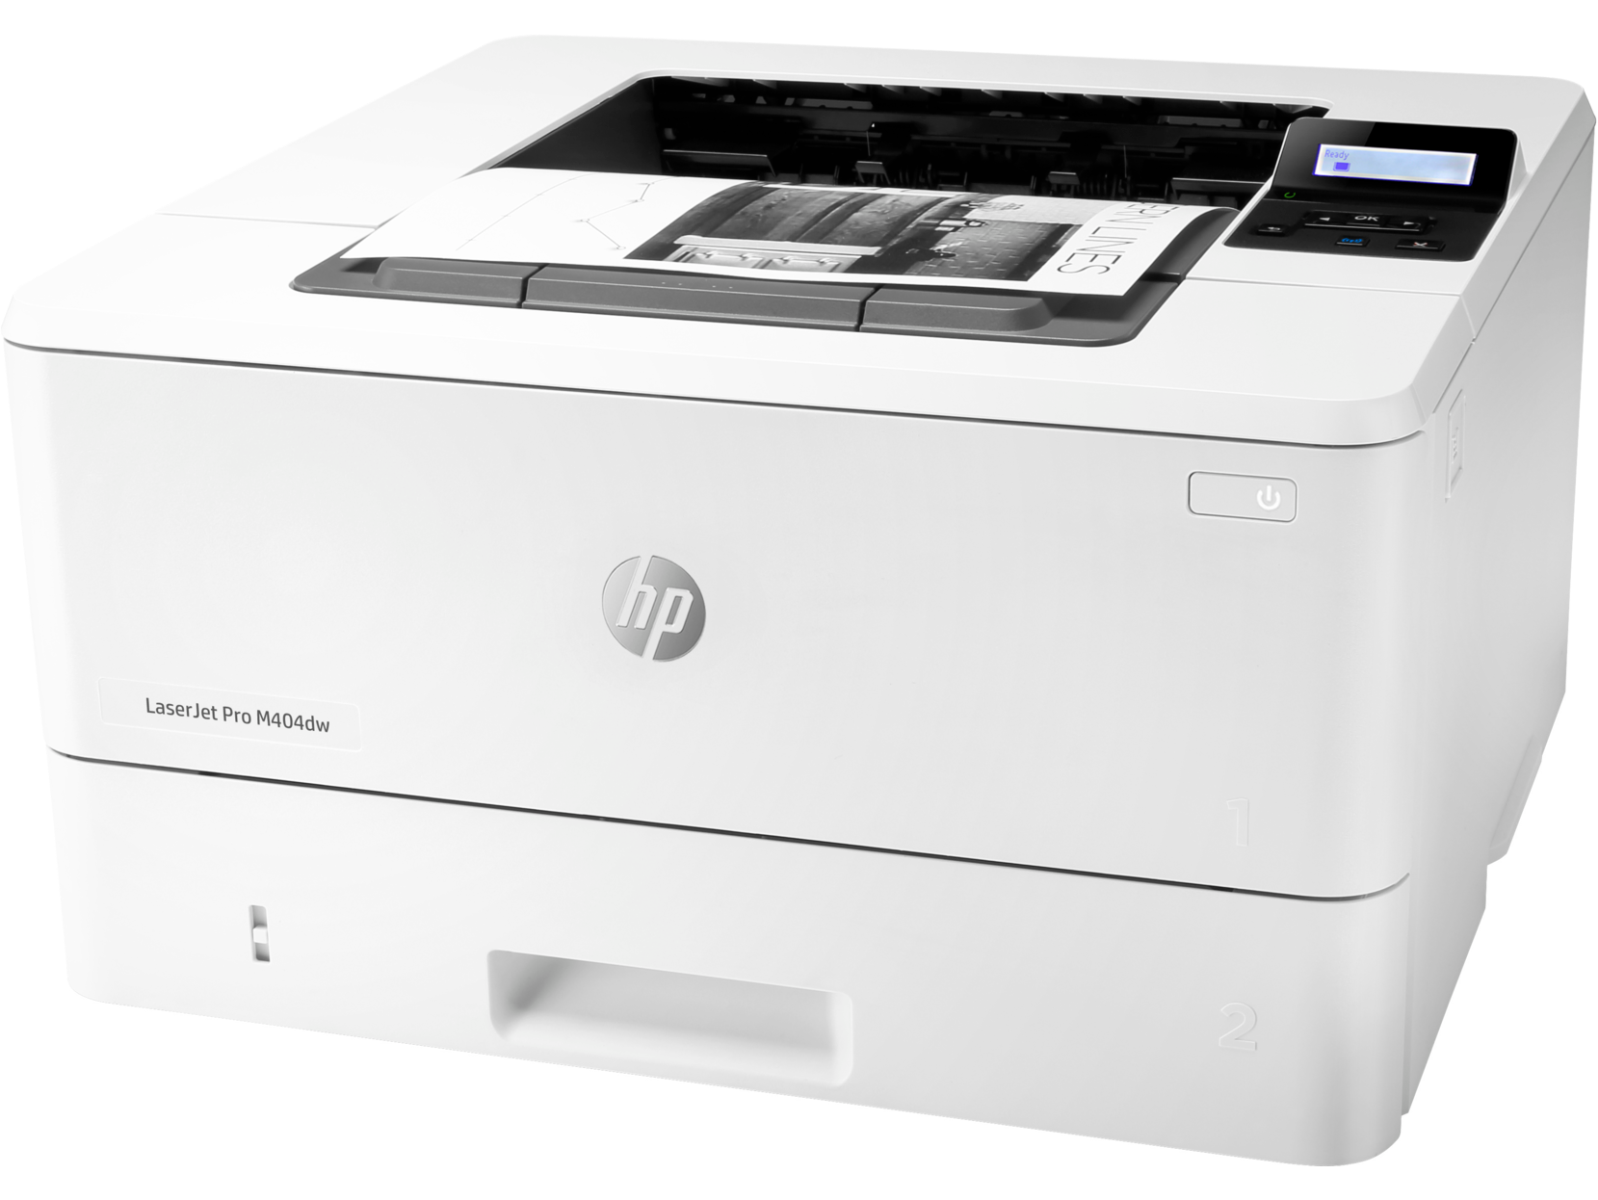 Máy in đen trắng HP LaserJet Pro M404dw phù hợp sử dụng trong văn phòng 